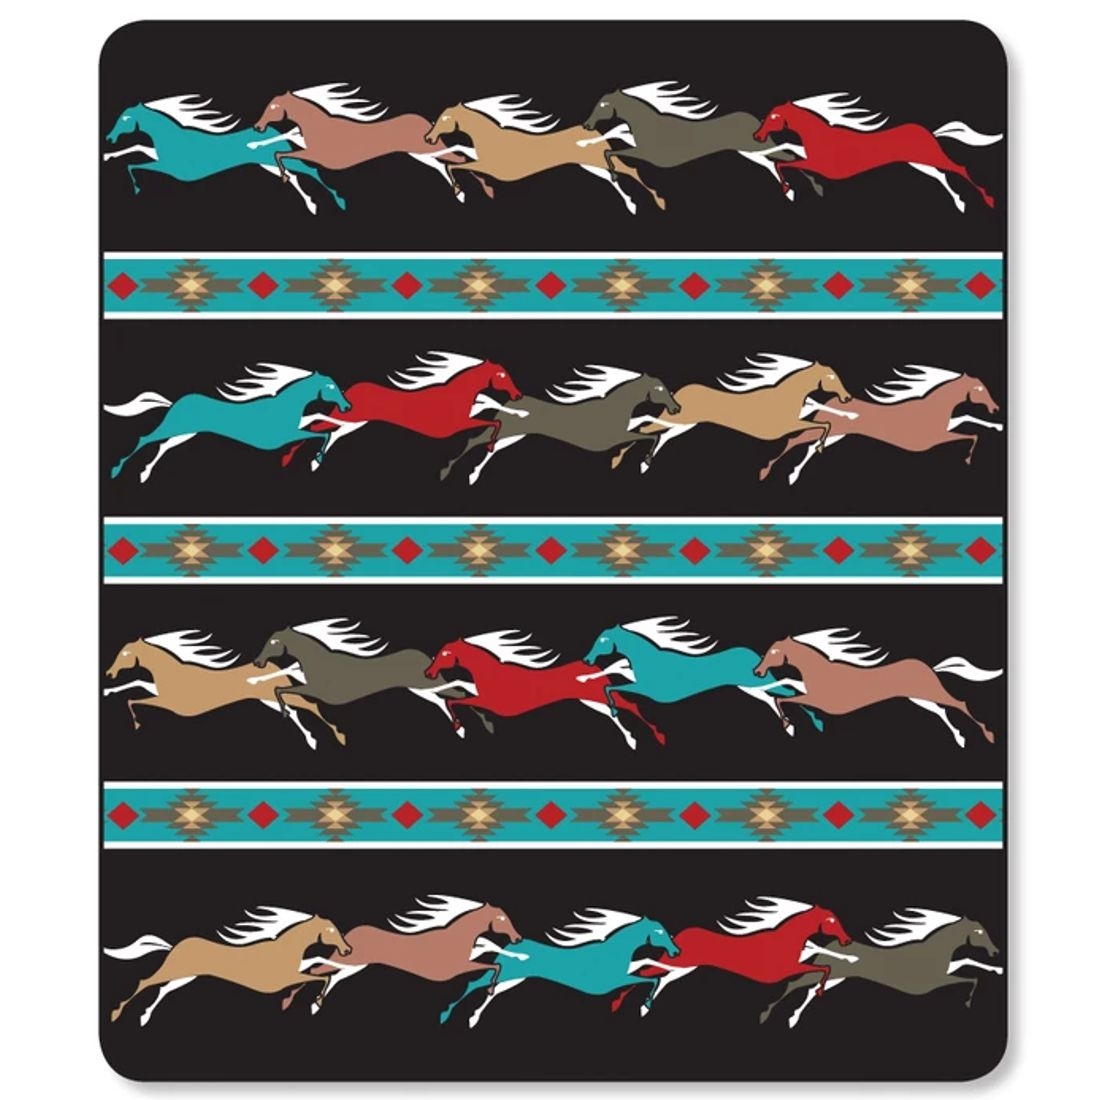 Luxus-Fleece Western- & Indianer-Decke - Rancho El Cid - Pony Run, 240 x 200 cm